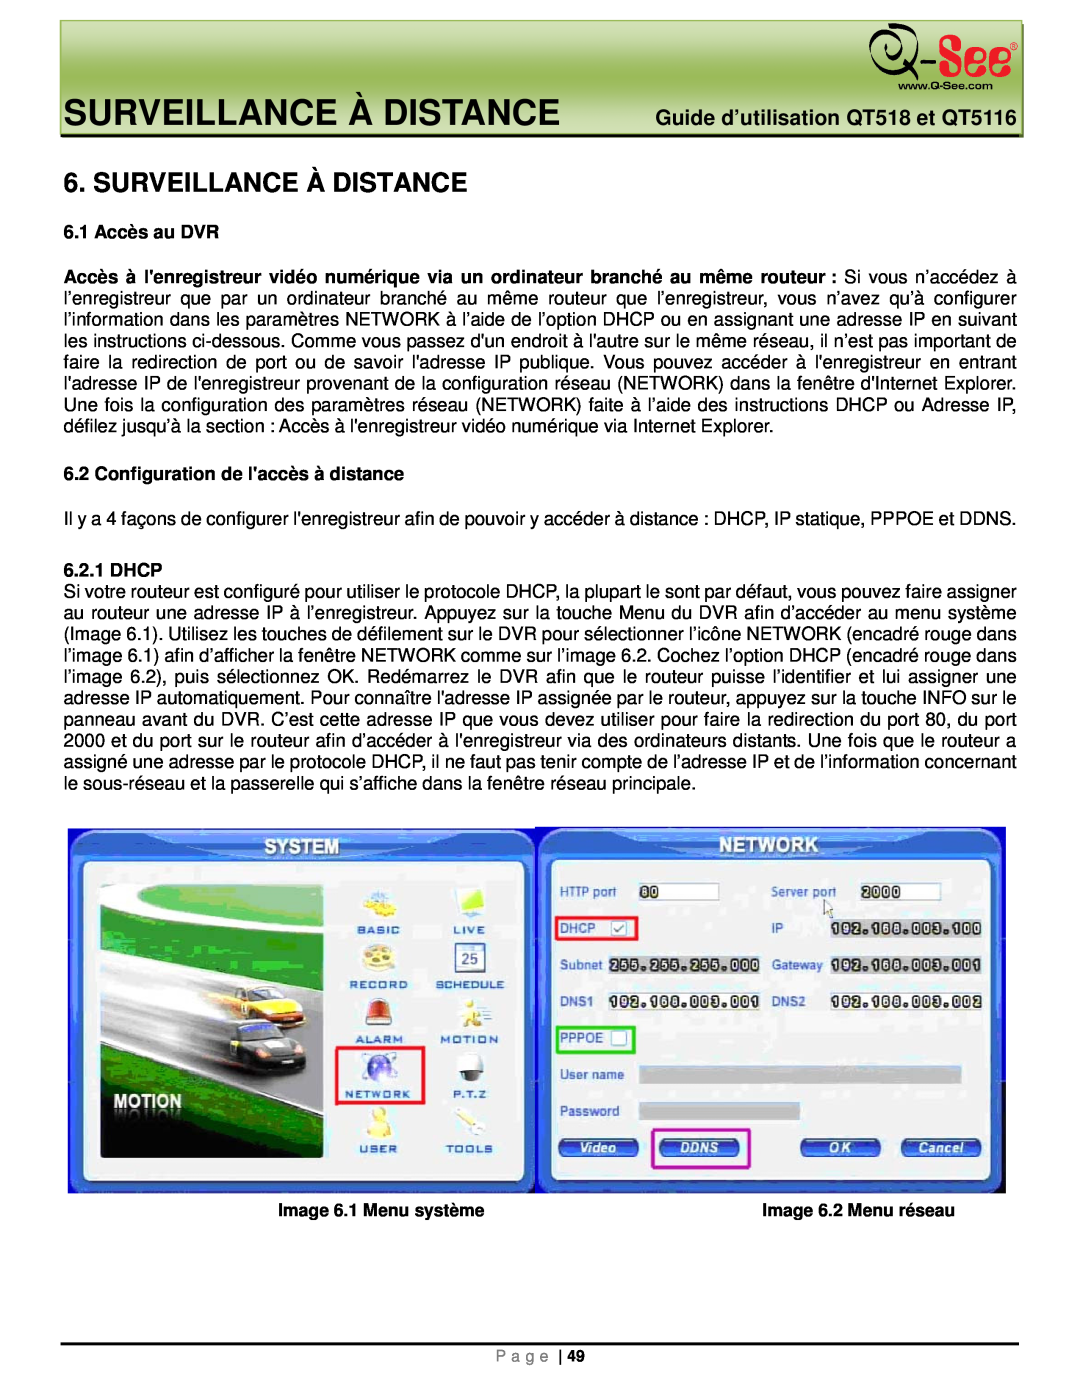 Q-See manual Surveillance À Distance, Guide d’utilisation QT518 et QT5116 